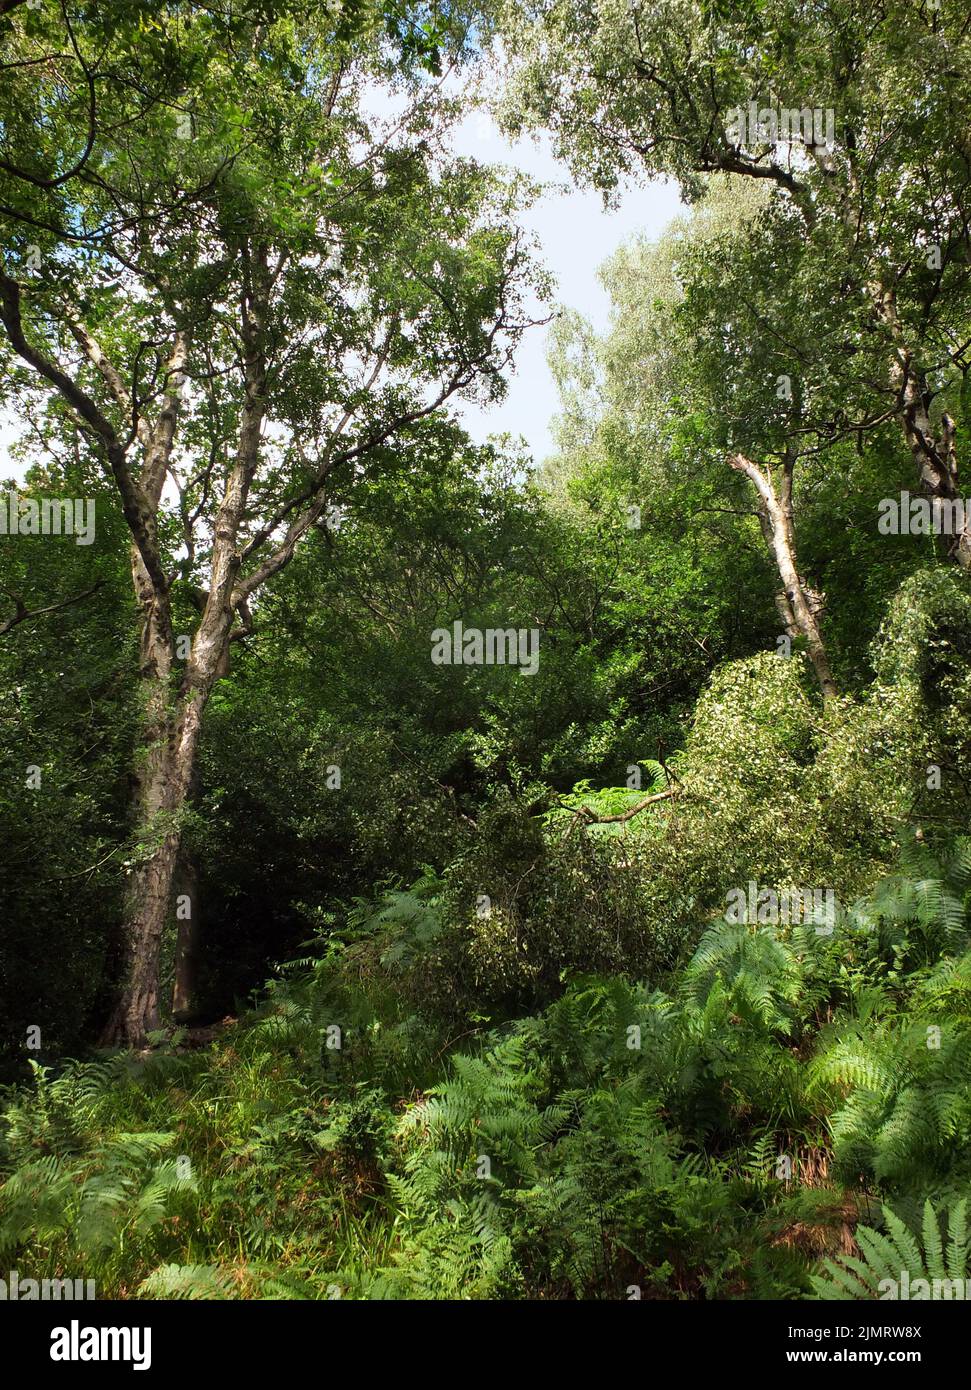 Forêt dense et verte entourée d'herbes de fougères denses et d'arbres en plein soleil d'été Banque D'Images